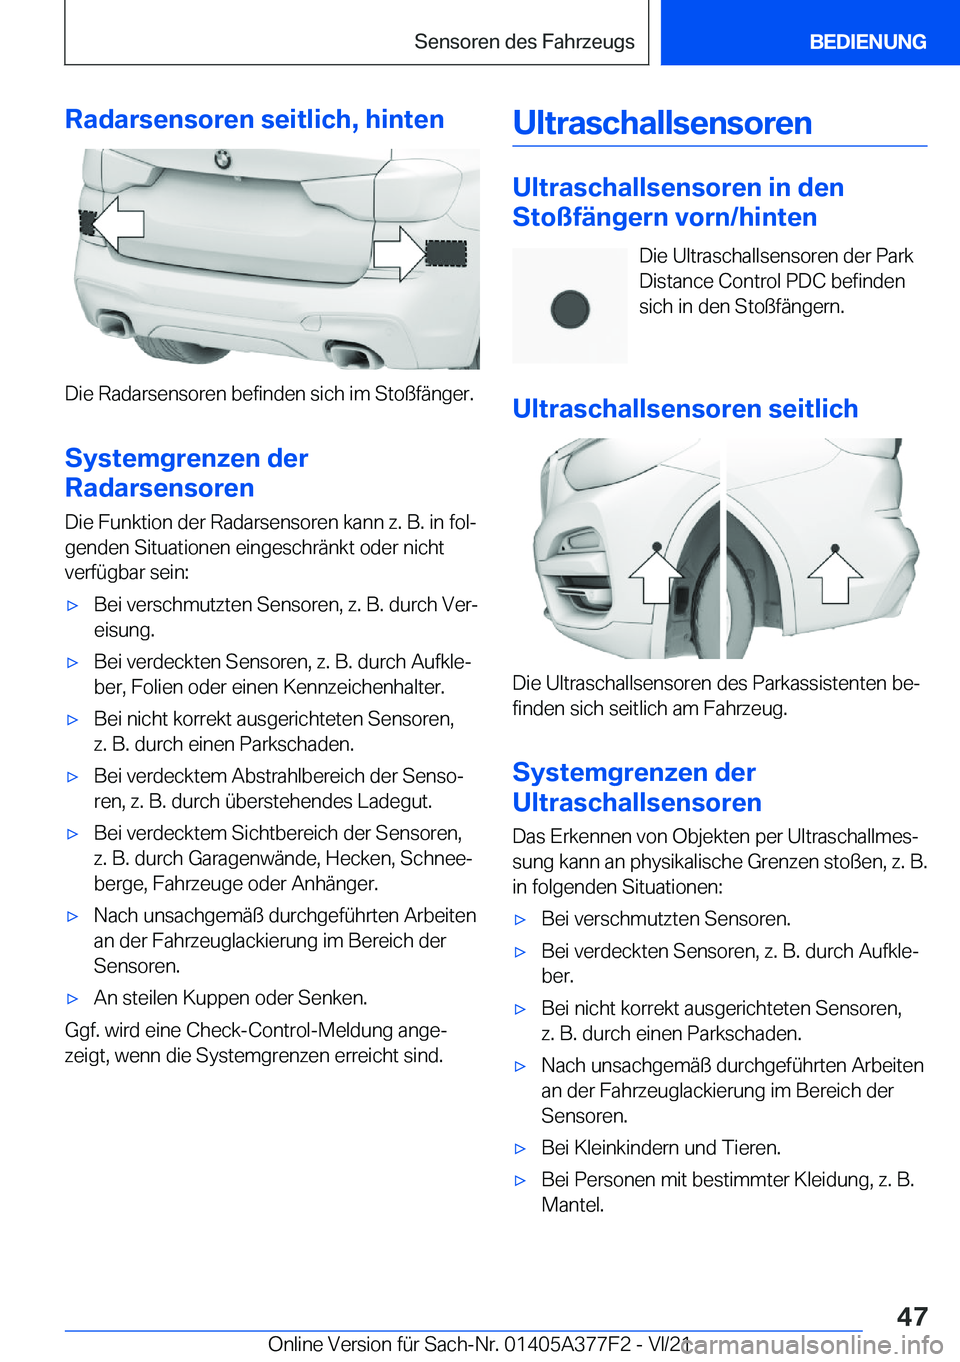 BMW X3 M 2022  Betriebsanleitungen (in German) �R�a�d�a�r�s�e�n�s�o�r�e�n��s�e�i�t�l�i�c�h�,��h�i�n�t�e�n
�D�i�e��R�a�d�a�r�s�e�n�s�o�r�e�n��b�e�f�i�n�d�e�n��s�i�c�h��i�m��S�t�o�